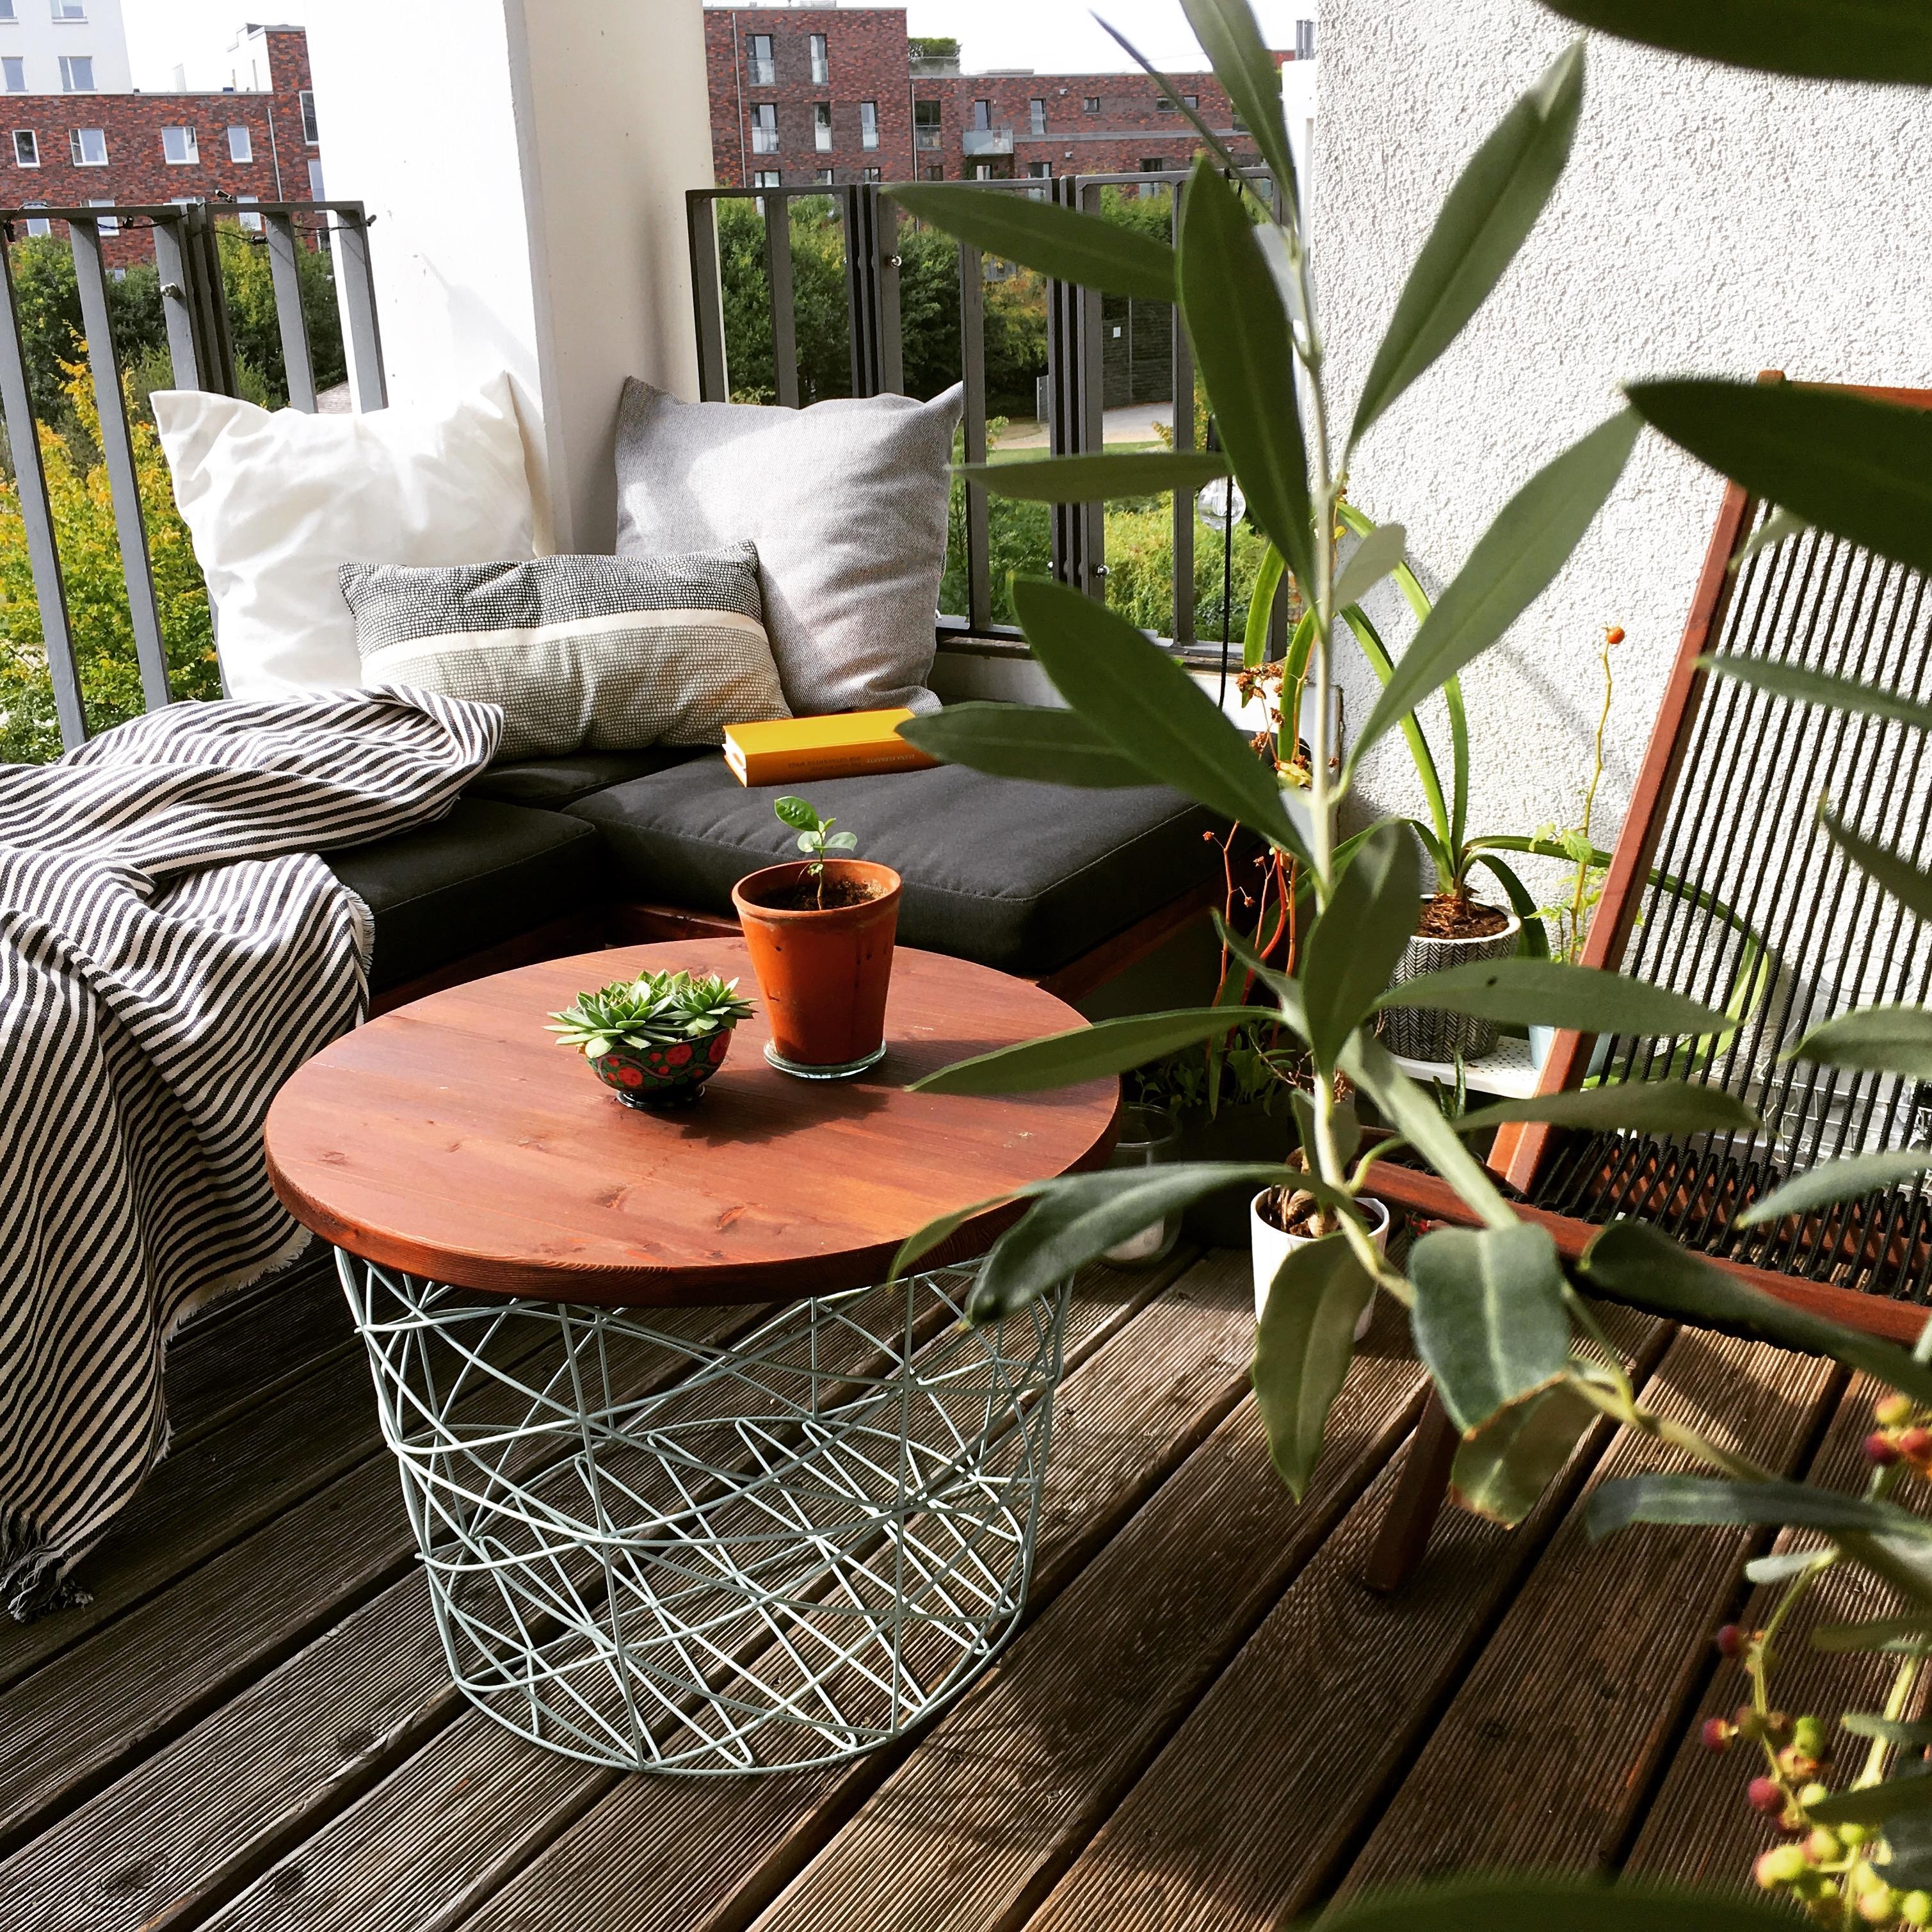 Mein absoluter Lieblingsort – selbstgebaute Bänke als kuschlige Sitzecke – 100% Genuss #balkon #livingchallenge